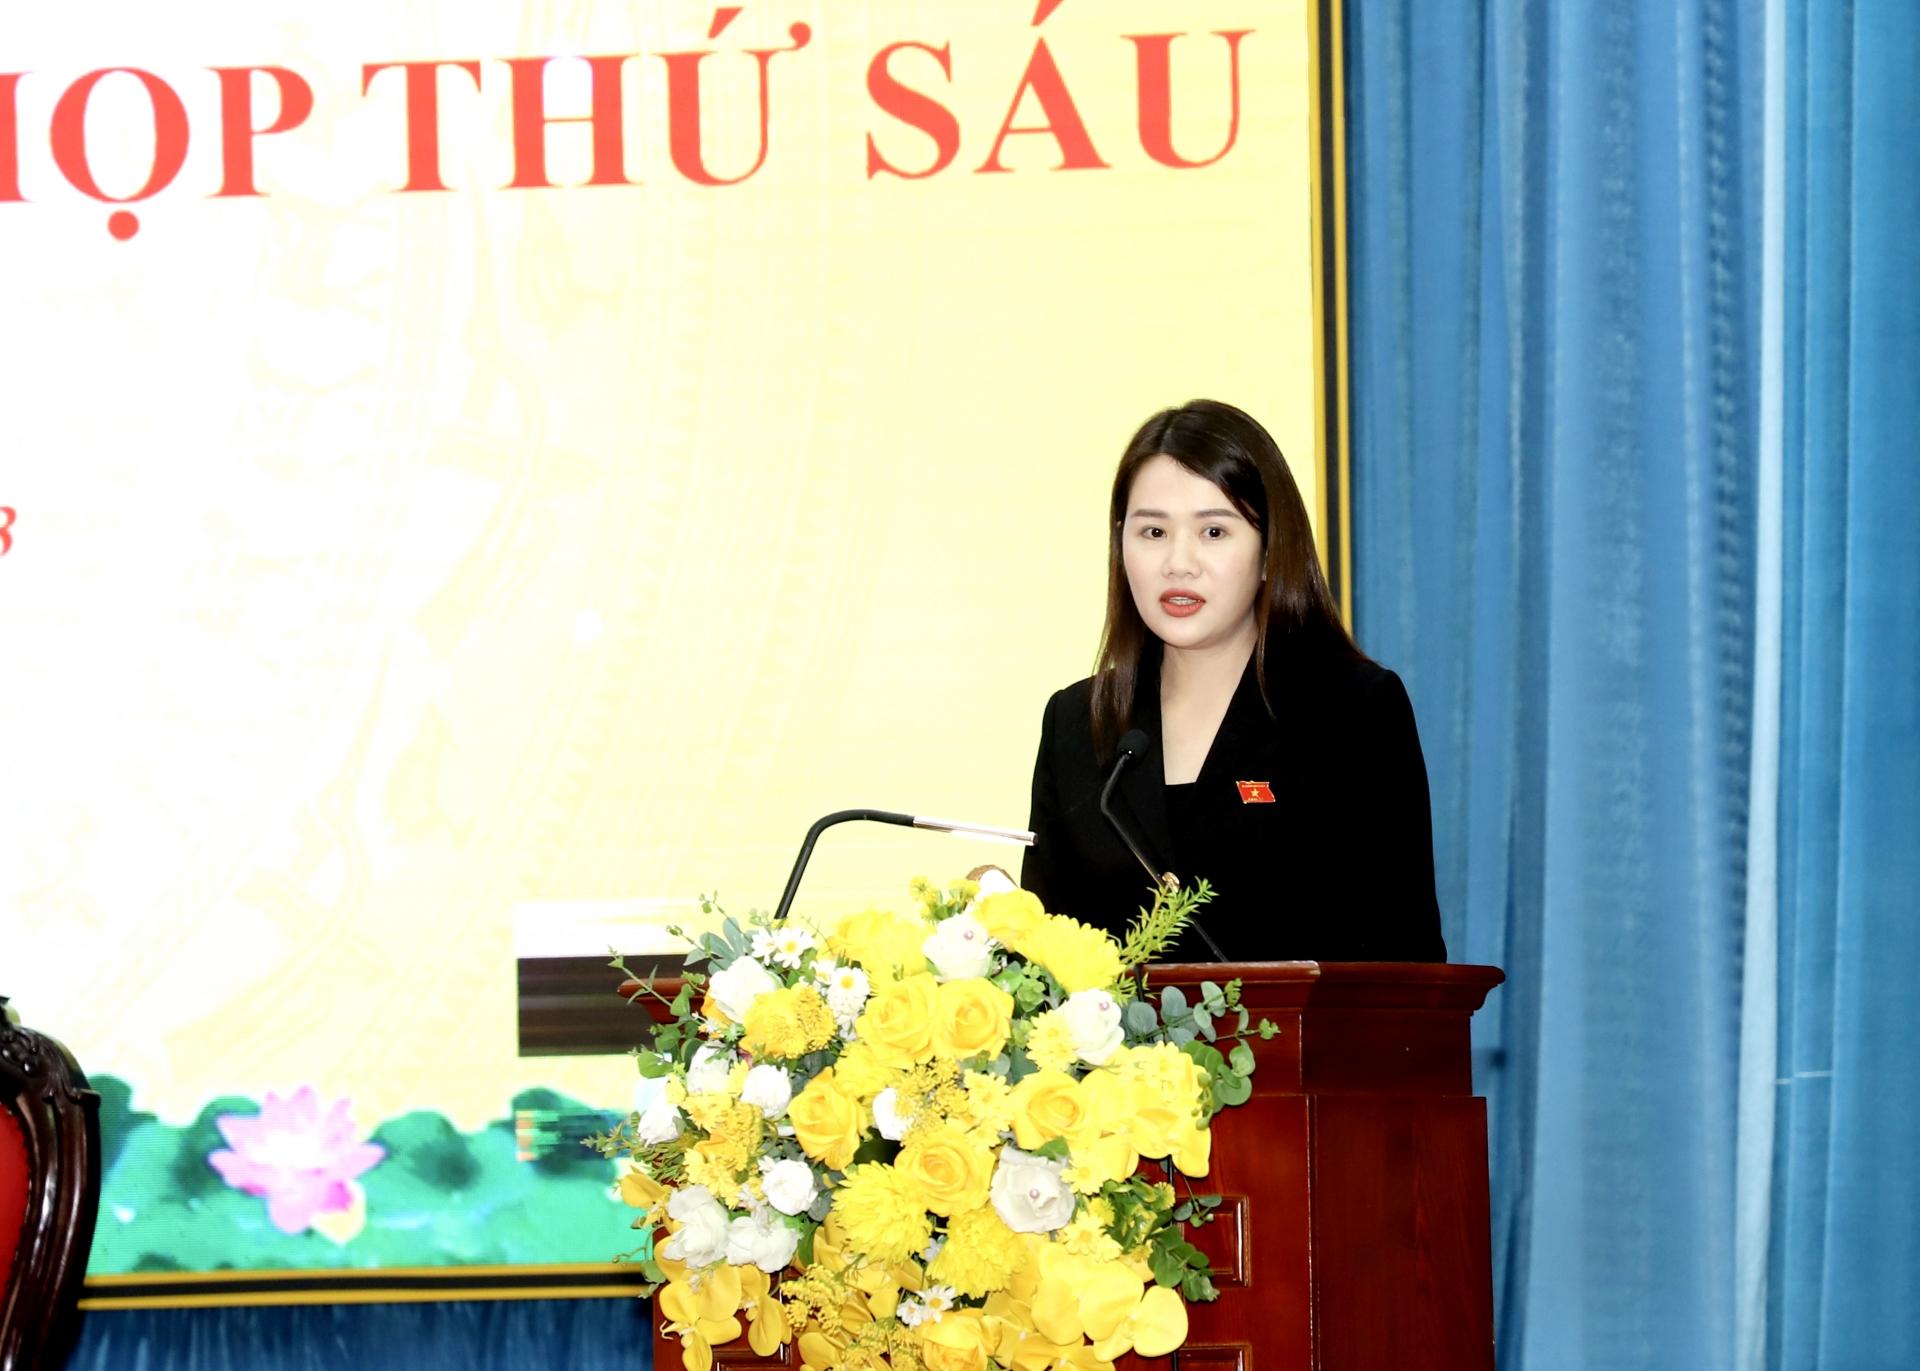 Đại biểu Vương Thị Hương báo cáo kết quả Kỳ họp thứ 6 và hoạt động của Đoàn ĐBQH tại kỳ họp tới cử tri.